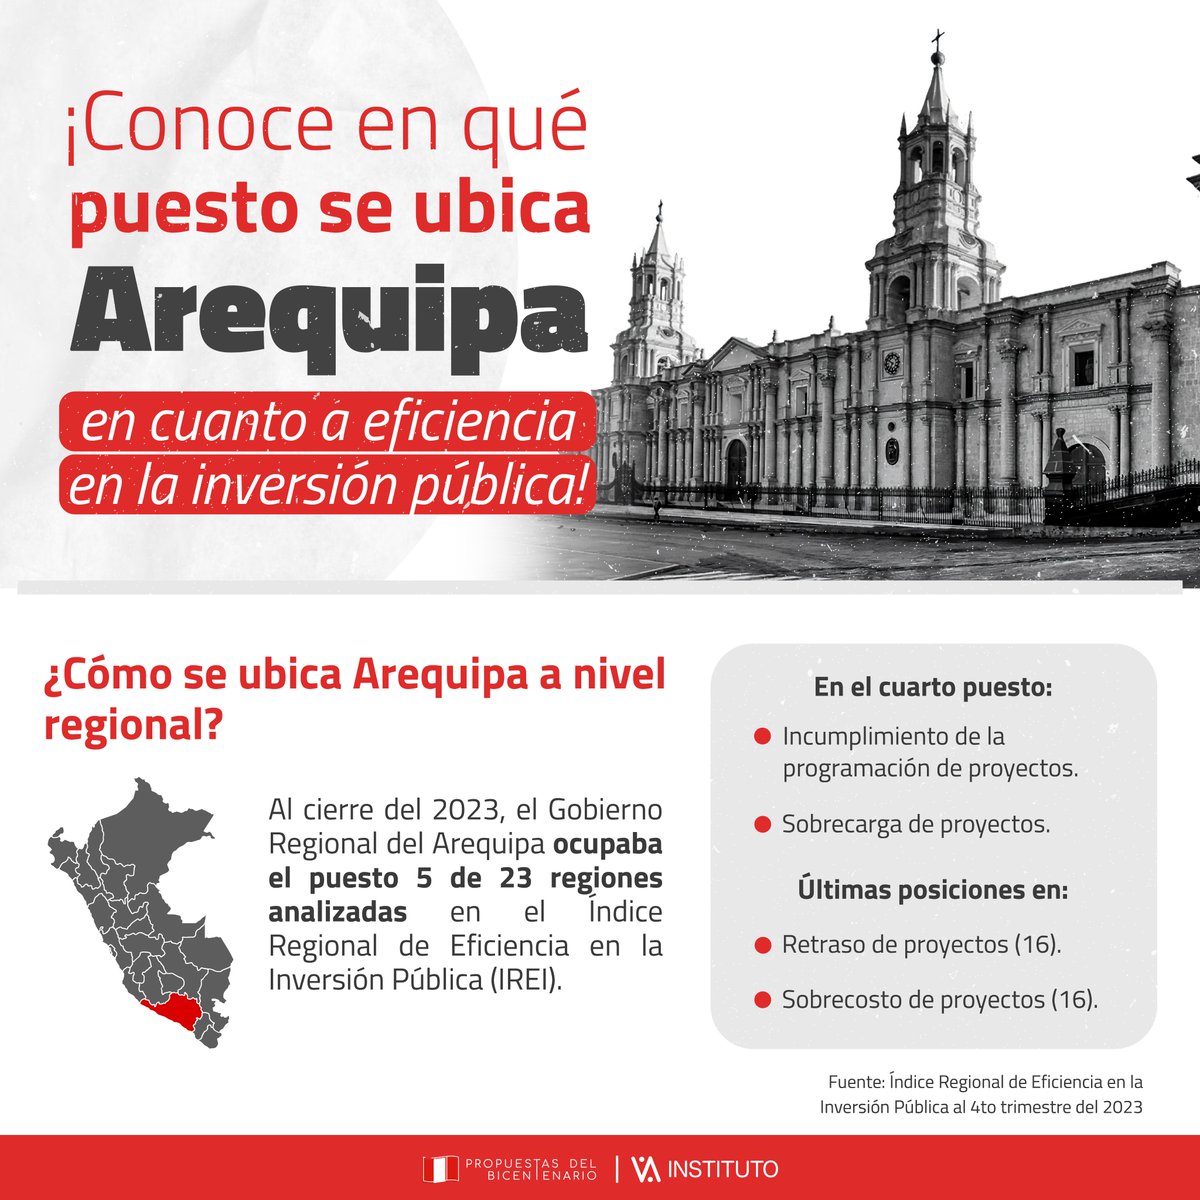 ¡Descubre cómo se posiciona #Arequipa en #Eficiencia en la #InversiónPública! 👉🏼 bit.ly/3TAvZHQ ​

Desde su ubicación regional 📍 hasta los desafíos y logros de la capital, esta infografía revela todo 👀.